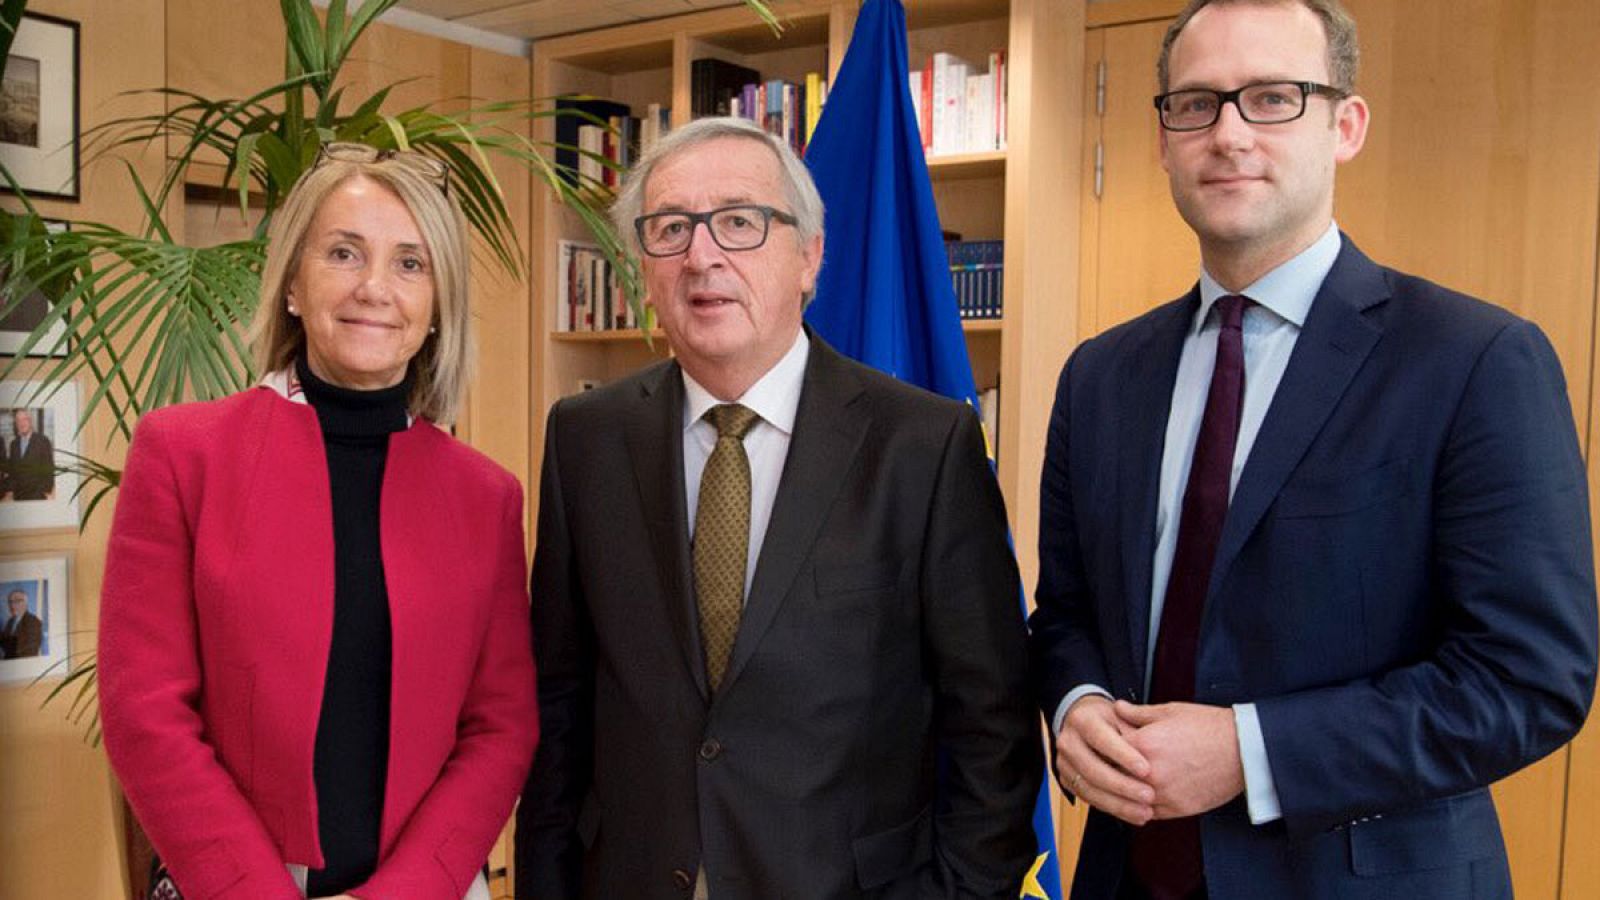 La española Clara Martínez, jefa de gabinete del presidente de la Comisión Europea, posa junto a Juncker y el subjefe de gabinete, Richard Szostak